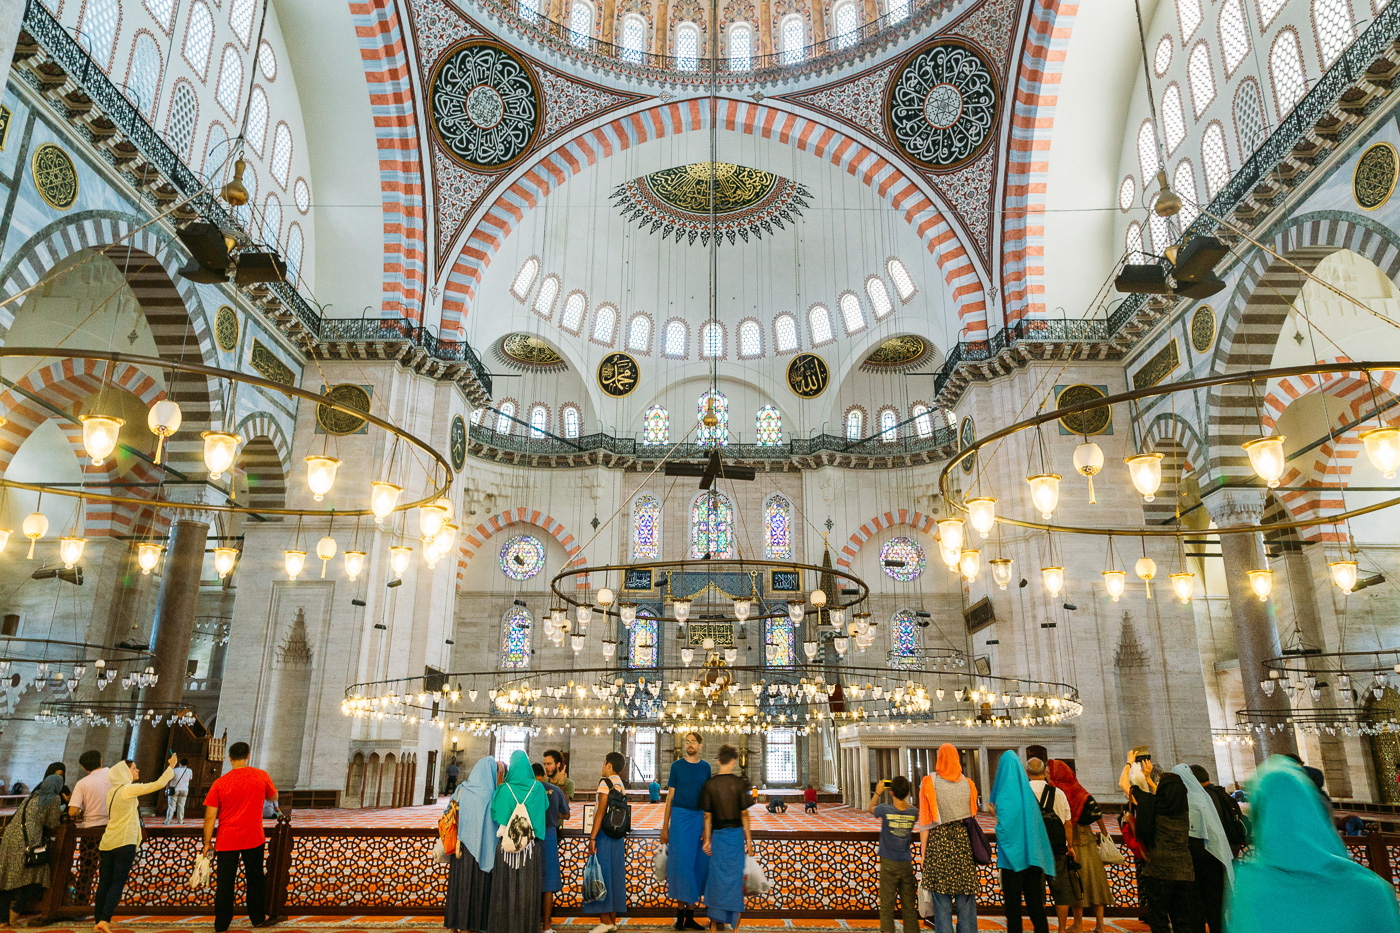 A visit to Süleymaniye in Istanbul, Turkey